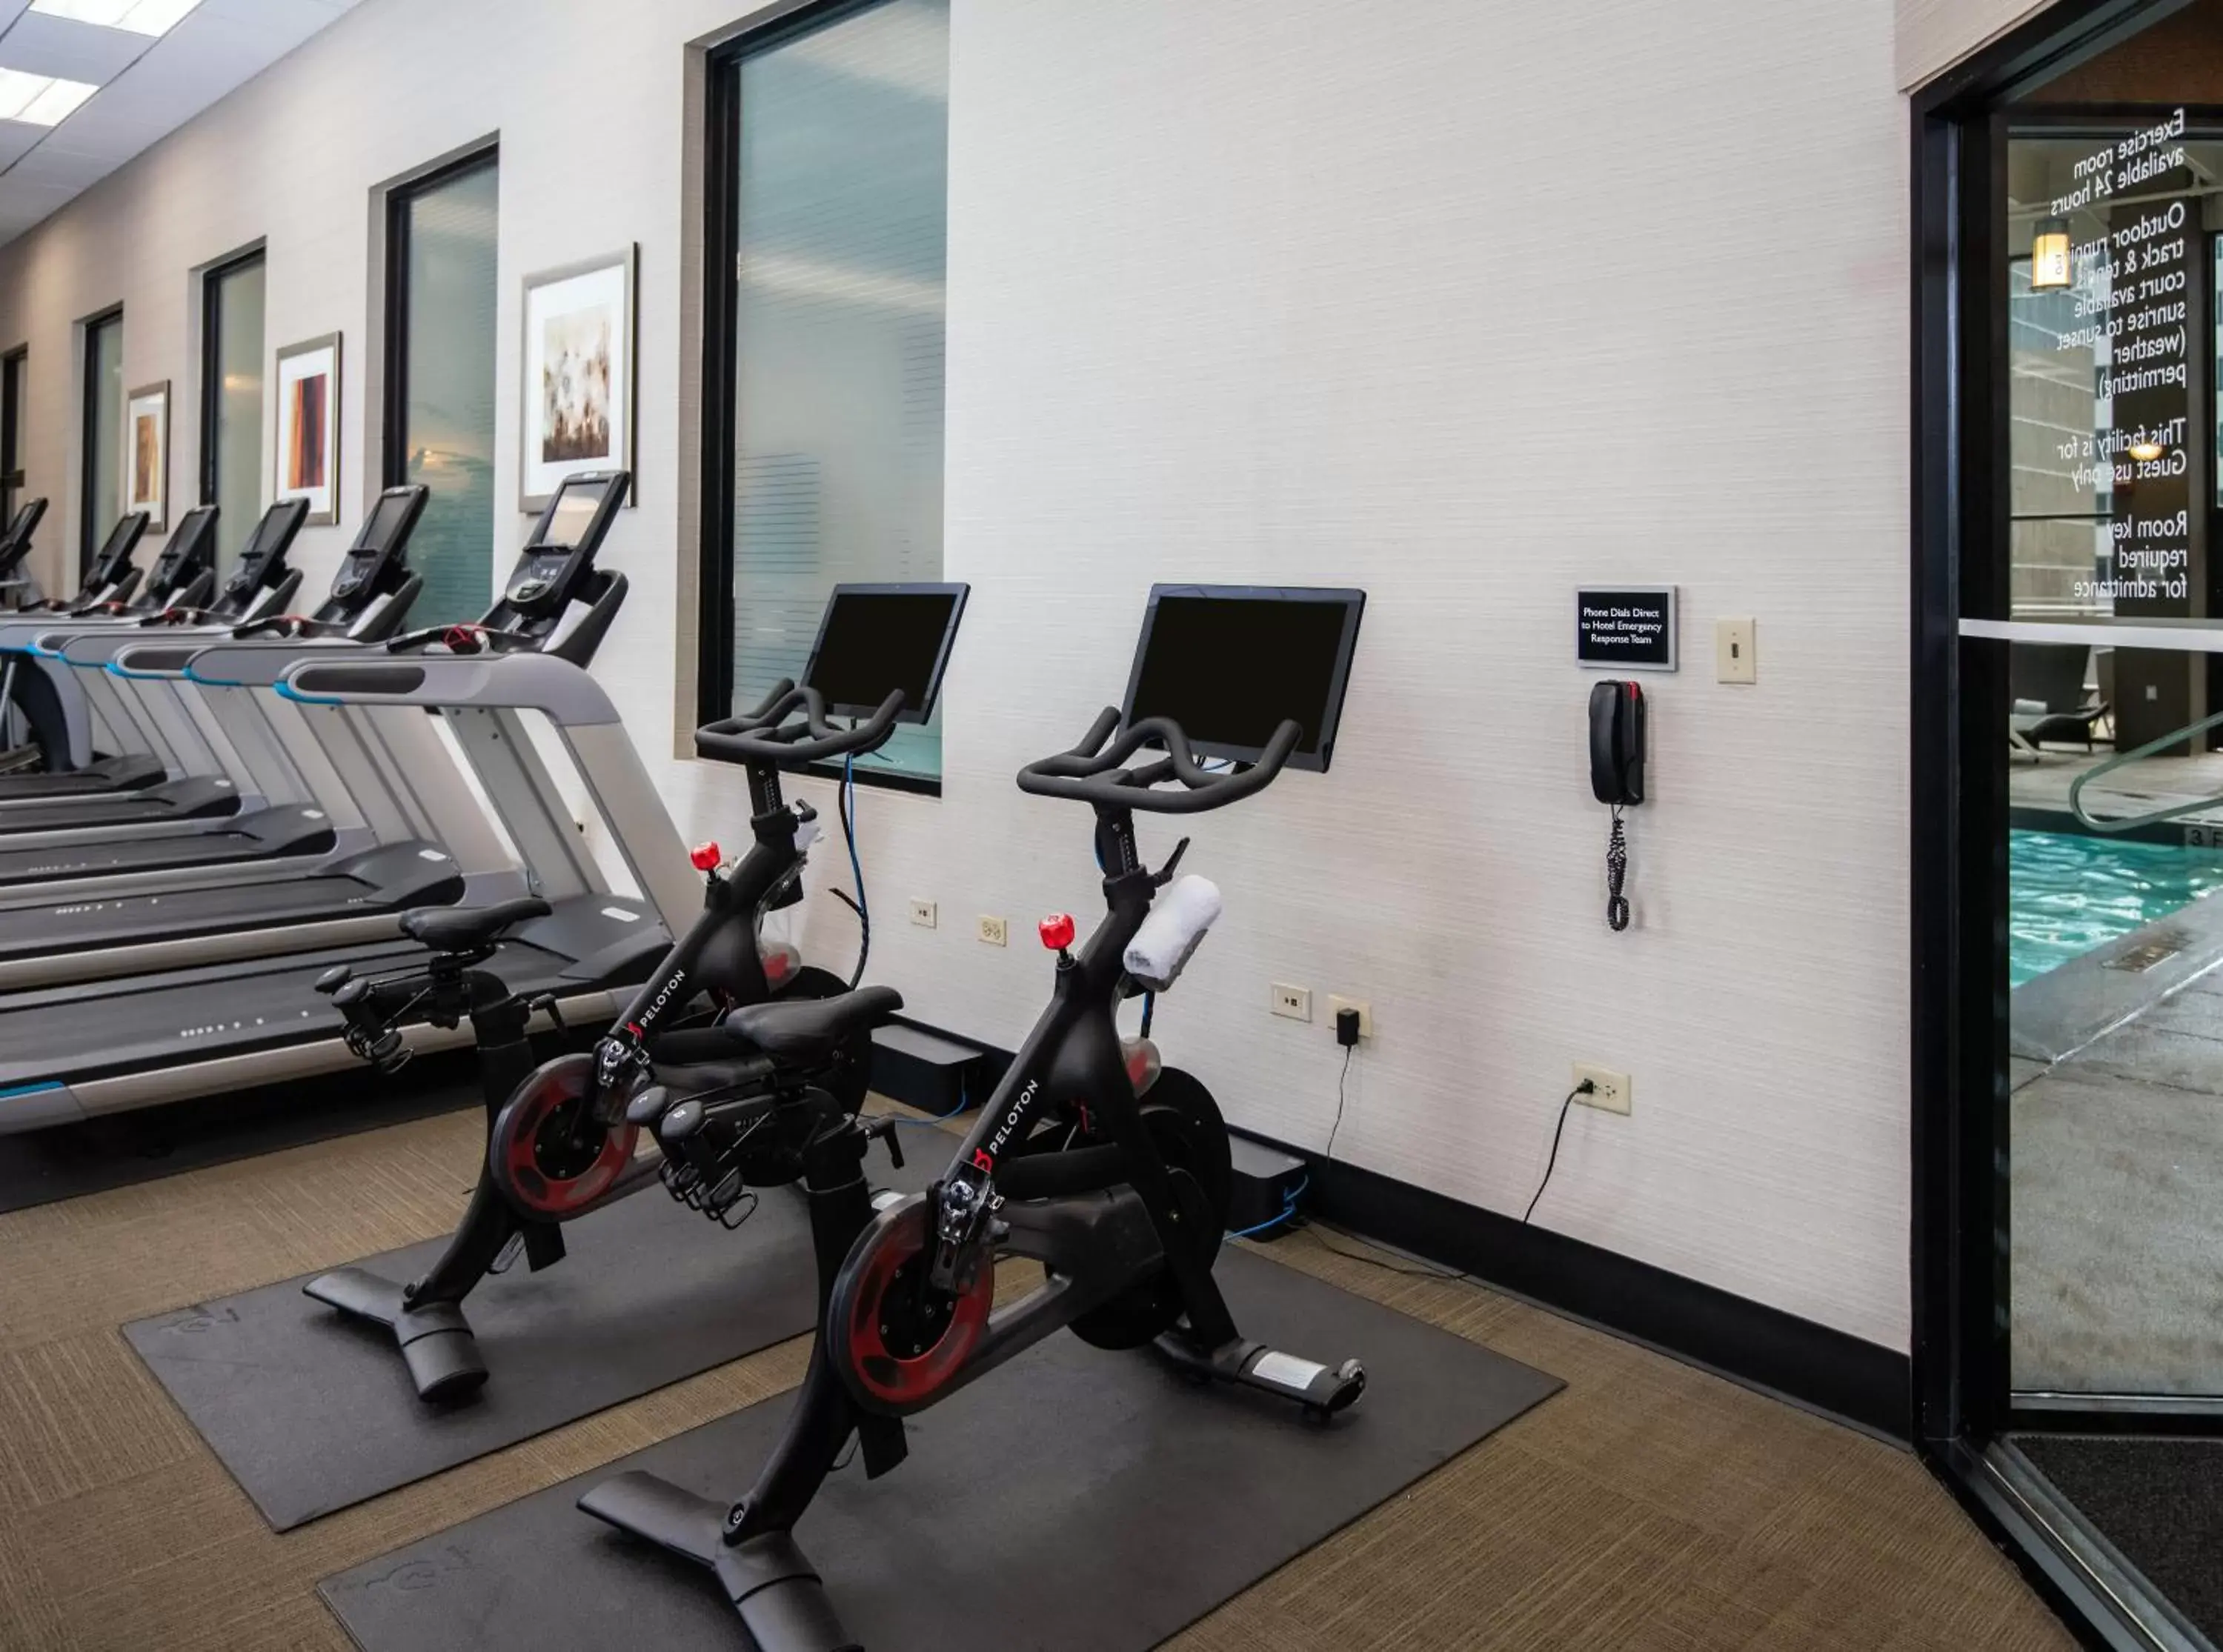 Activities, Fitness Center/Facilities in Grand Hyatt Denver